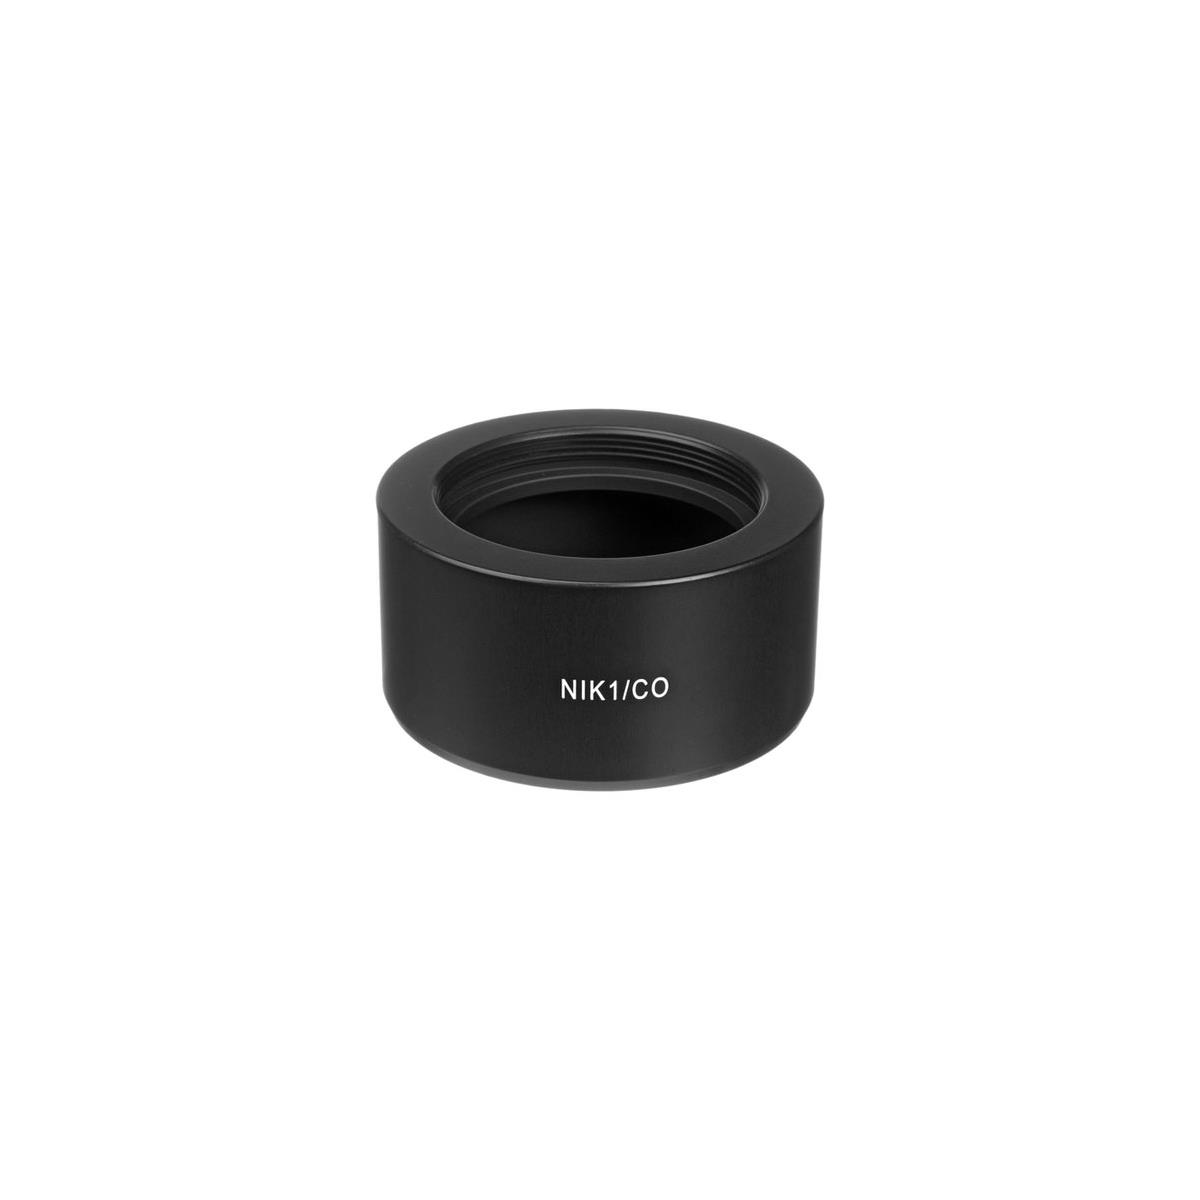 Image of Novoflex Adapter for M42 Lenses to Nikon 1 Cameras